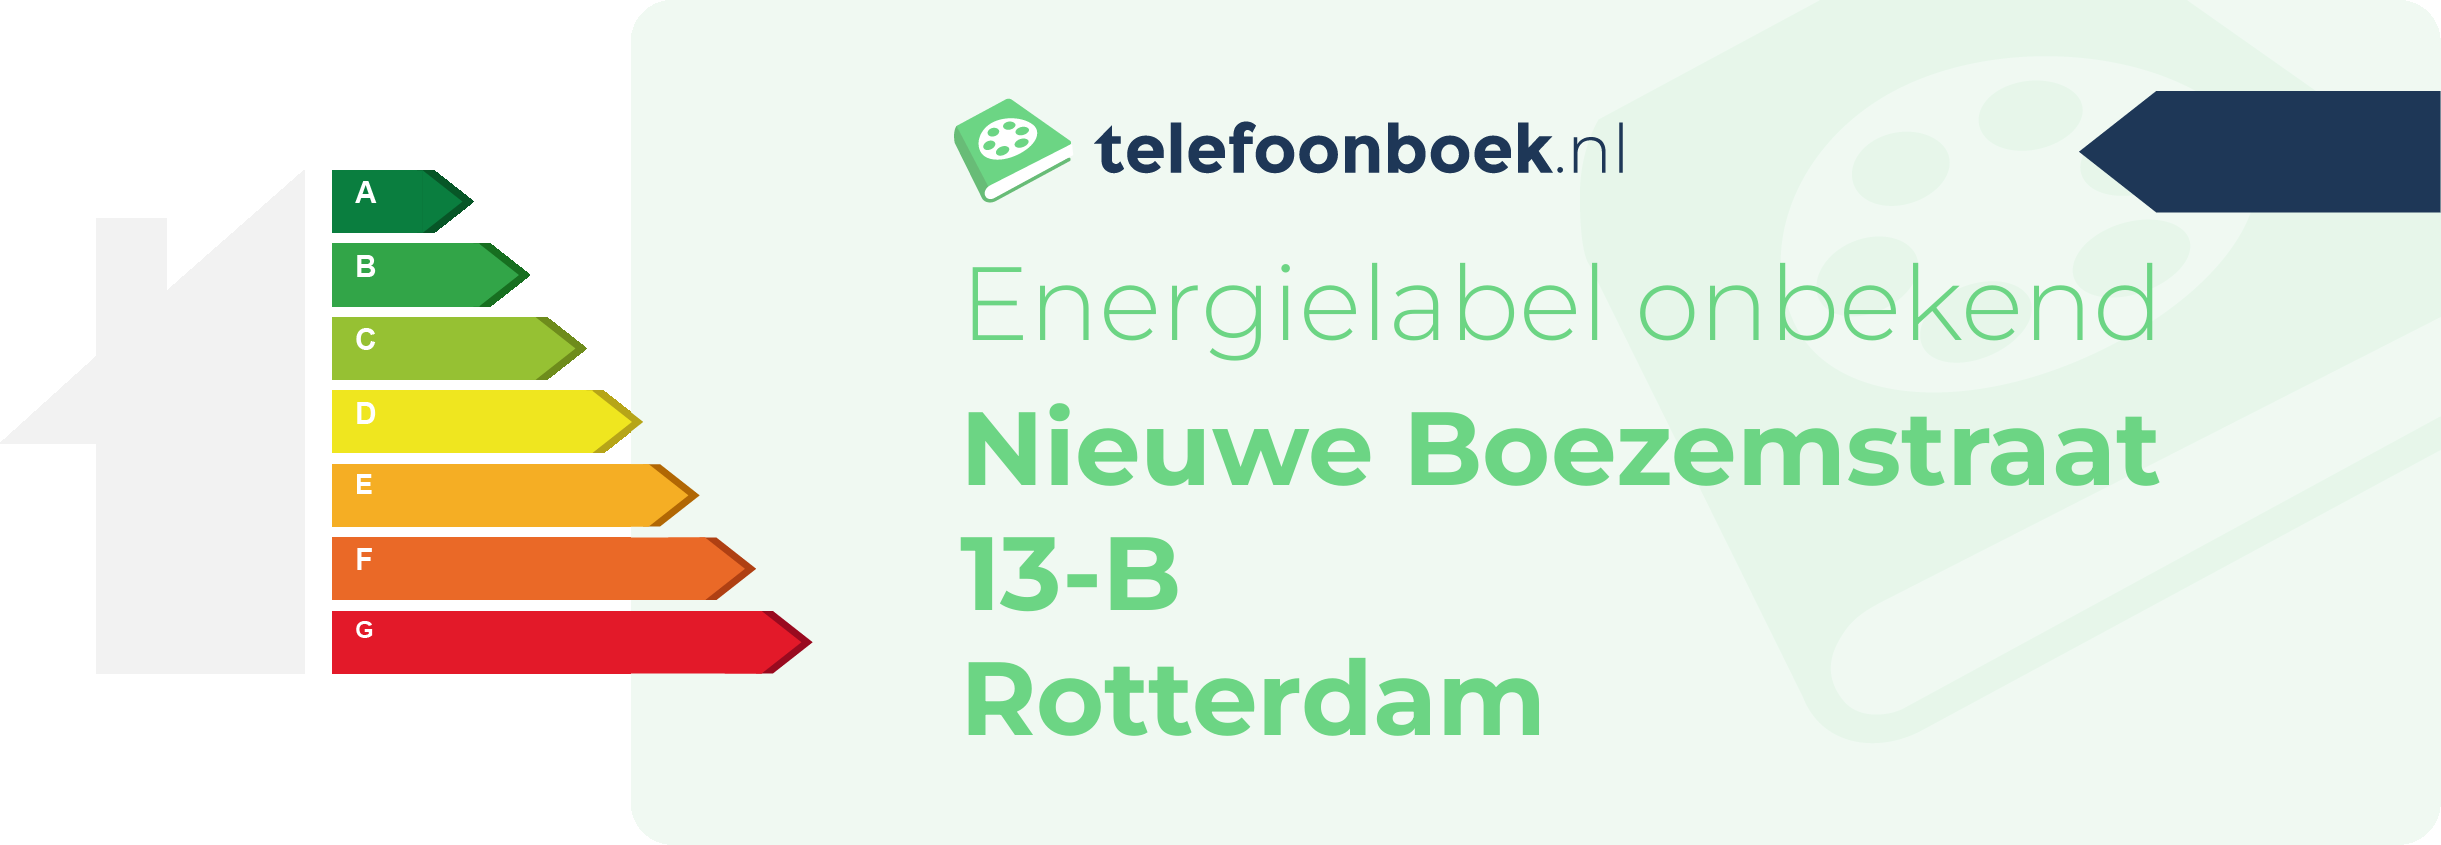 Energielabel Nieuwe Boezemstraat 13-B Rotterdam